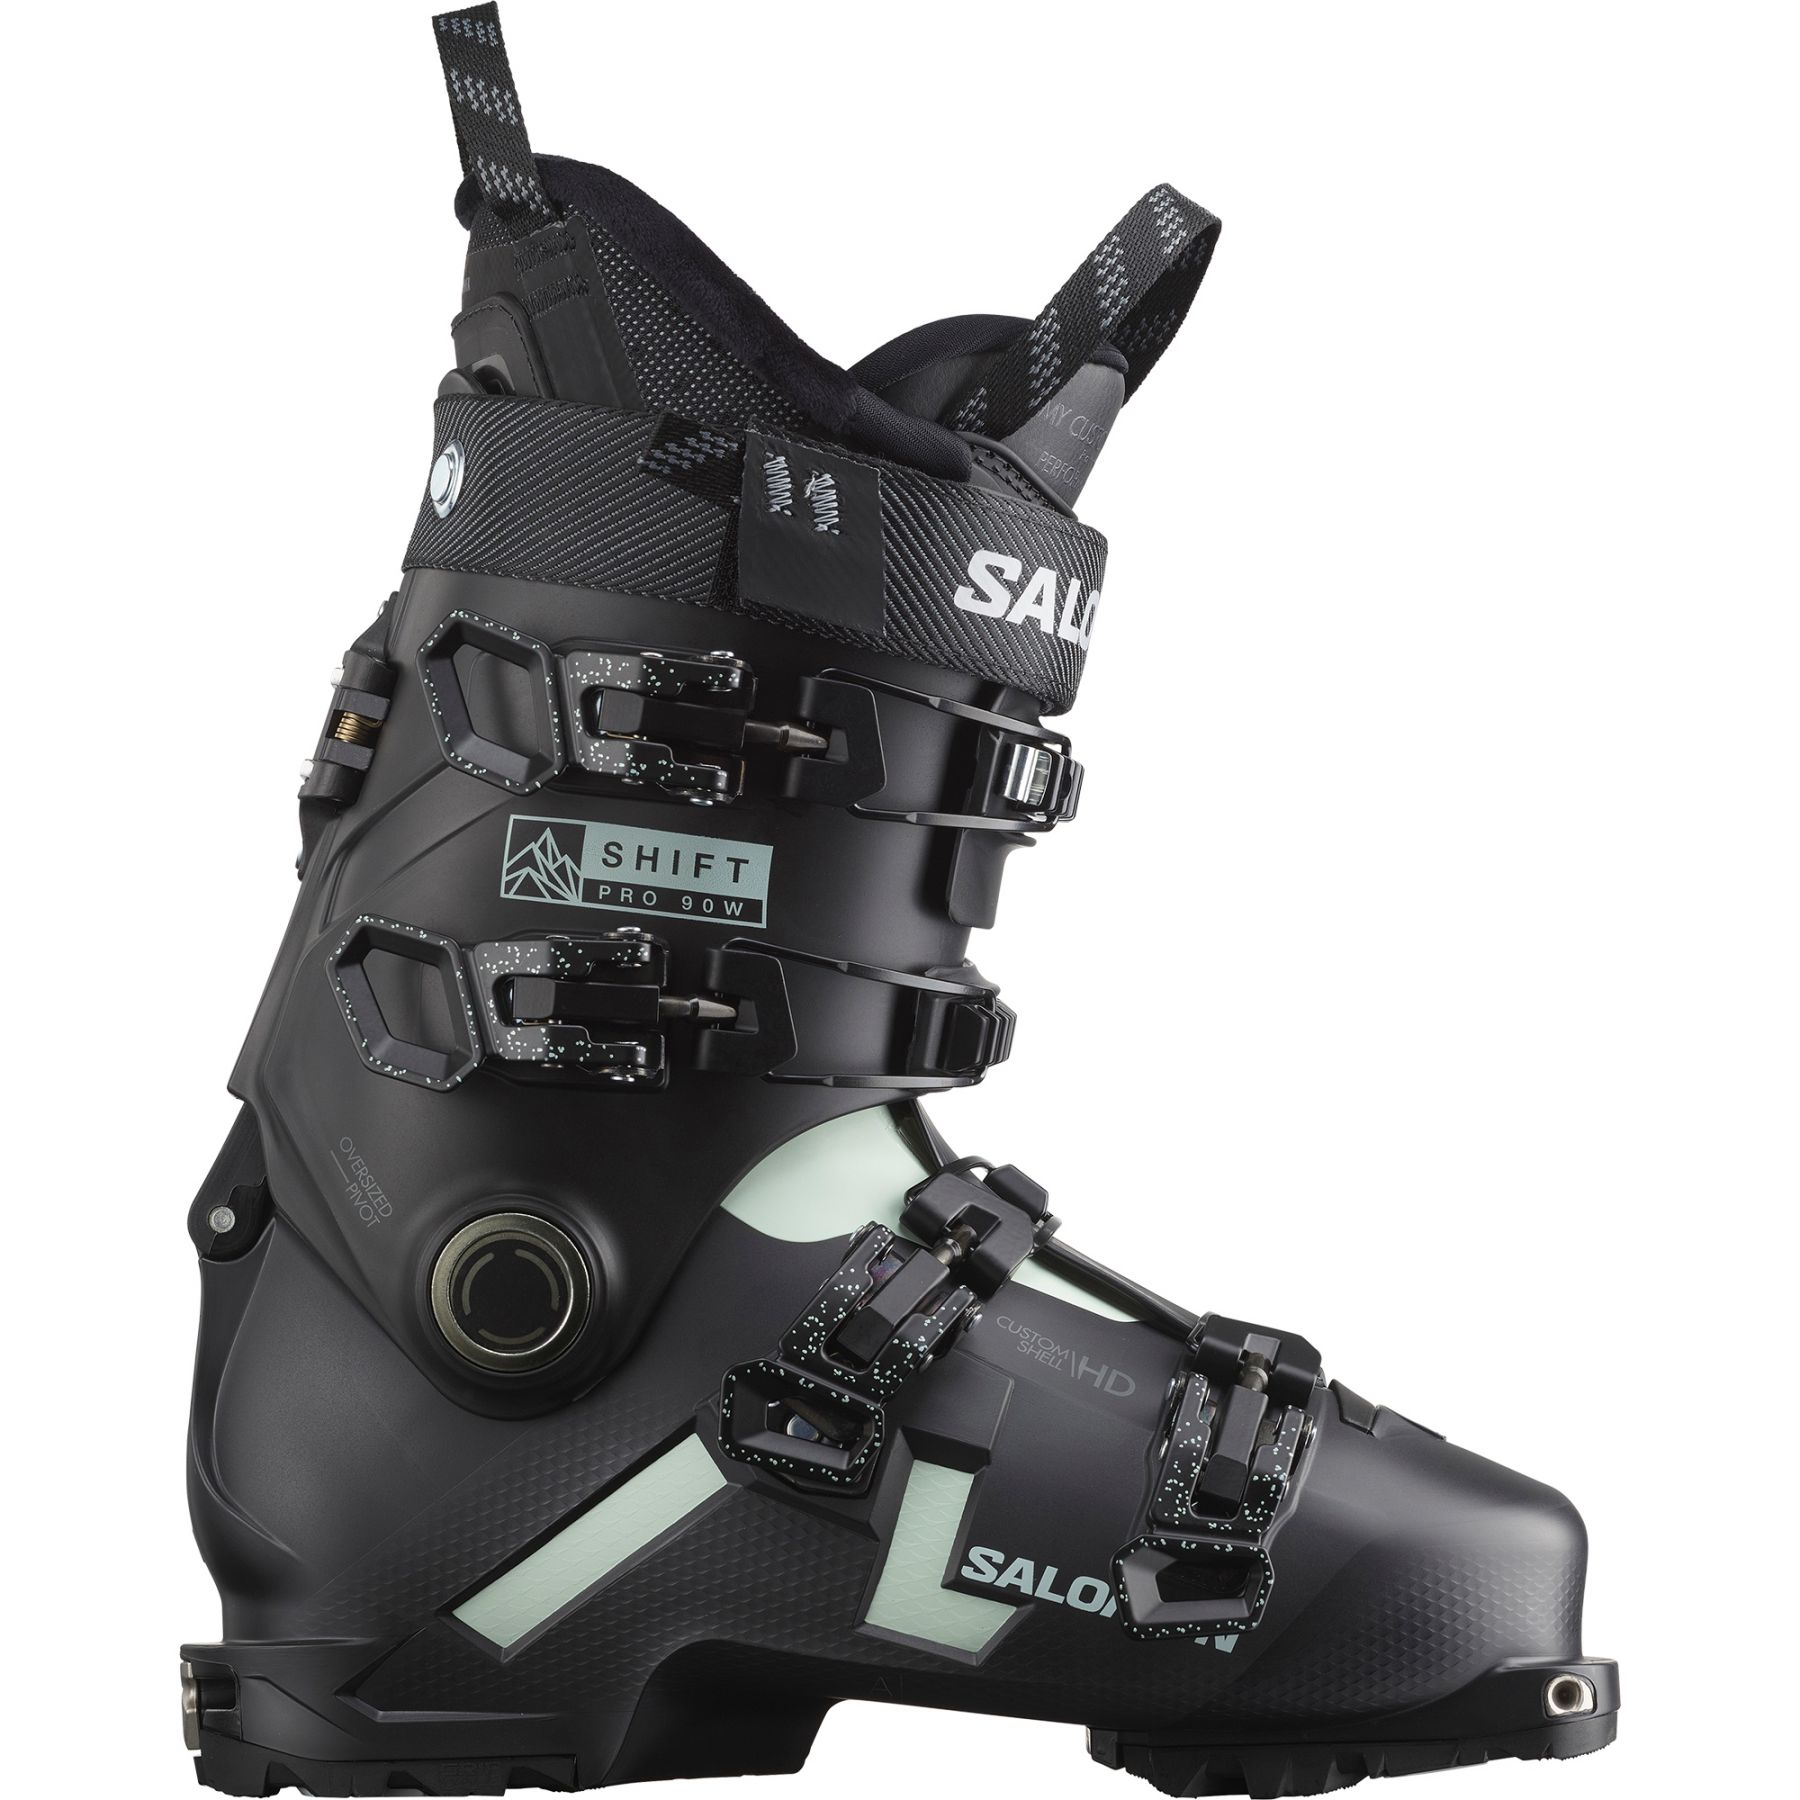 Billede af Salomon Shift PRO 90 W AT GW, skistøvler, dame, sort/lysegrøn hos Skisport.dk